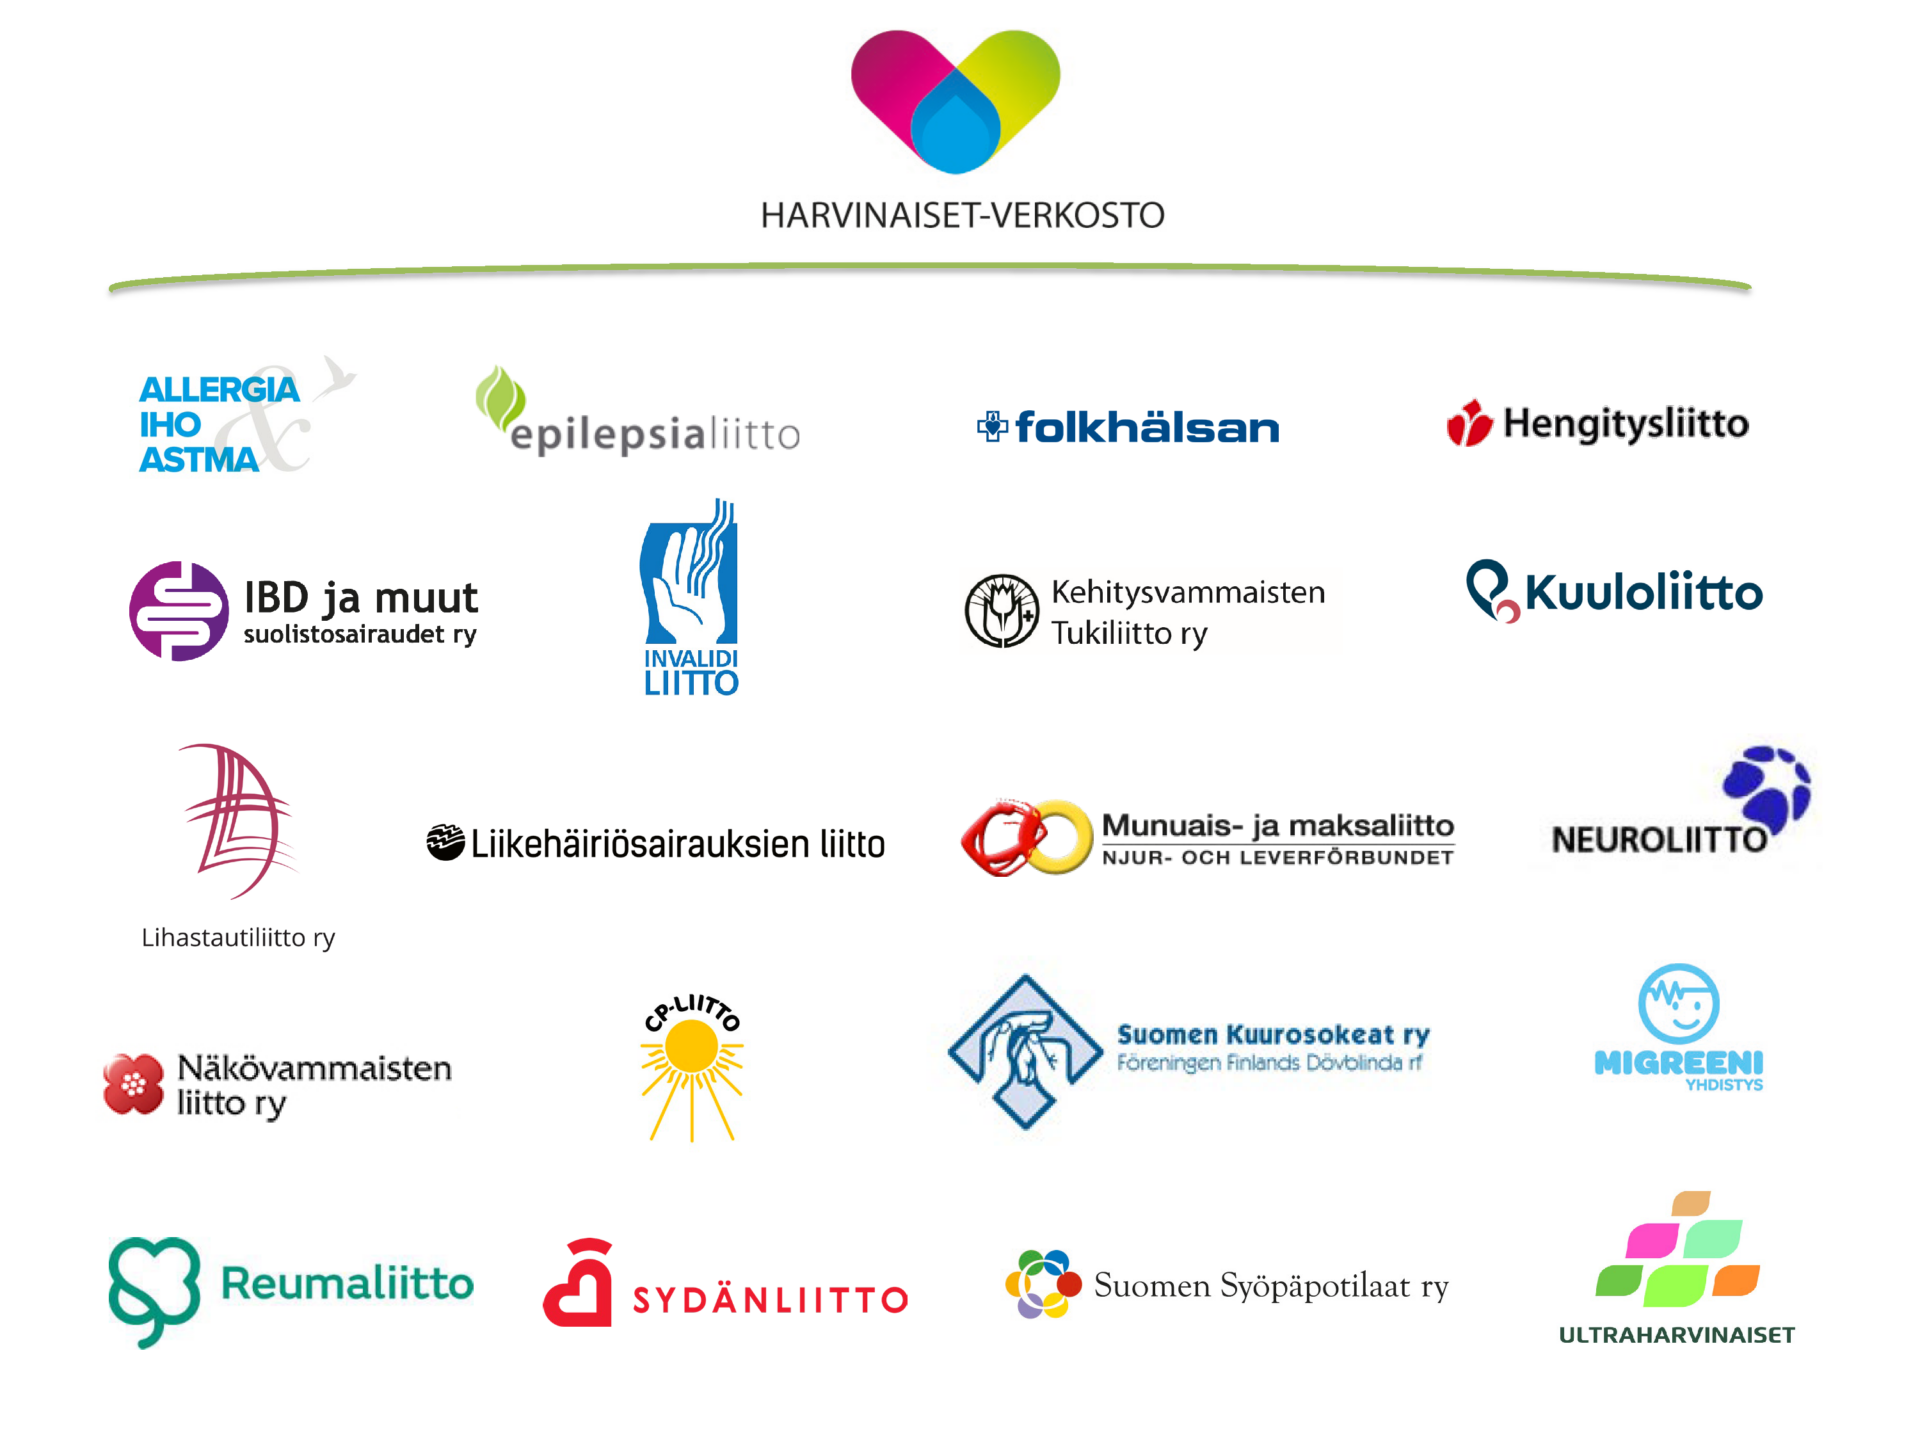 Harvinaiset-verkoston 20 jäsenjärjestön logot